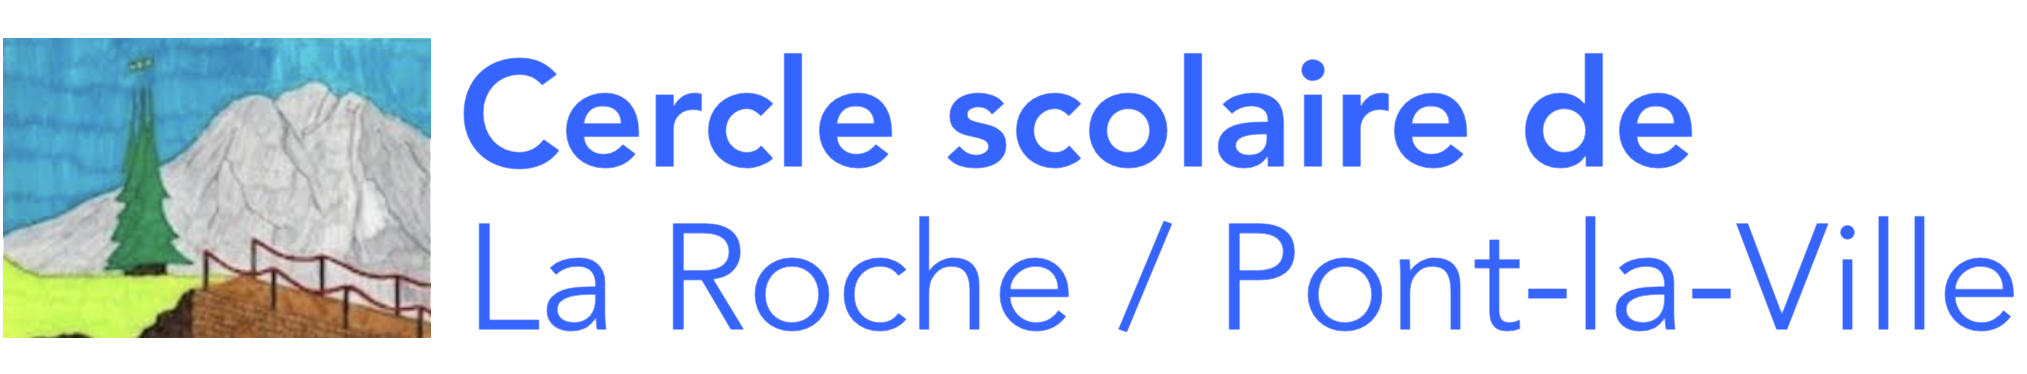 Ecole La Roche / Pont-la-Ville